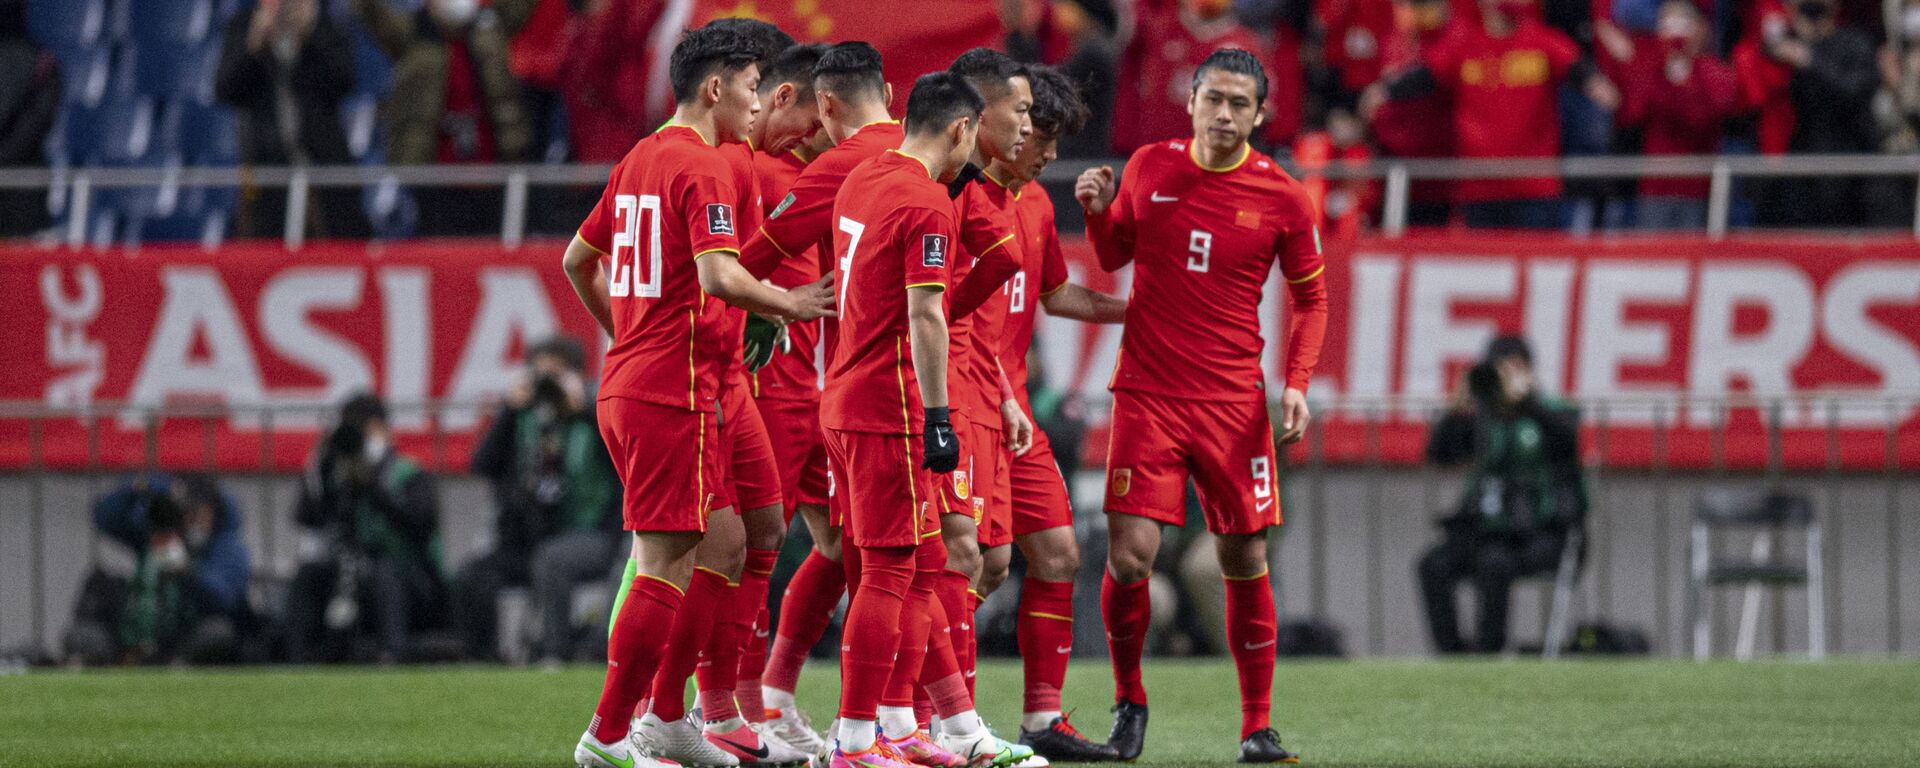 Các cầu thủ Trung Quốc trong vòng loại FIFA World Cup Qatar 2022 tại Nhật Bản - Sputnik Việt Nam, 1920, 30.01.2022